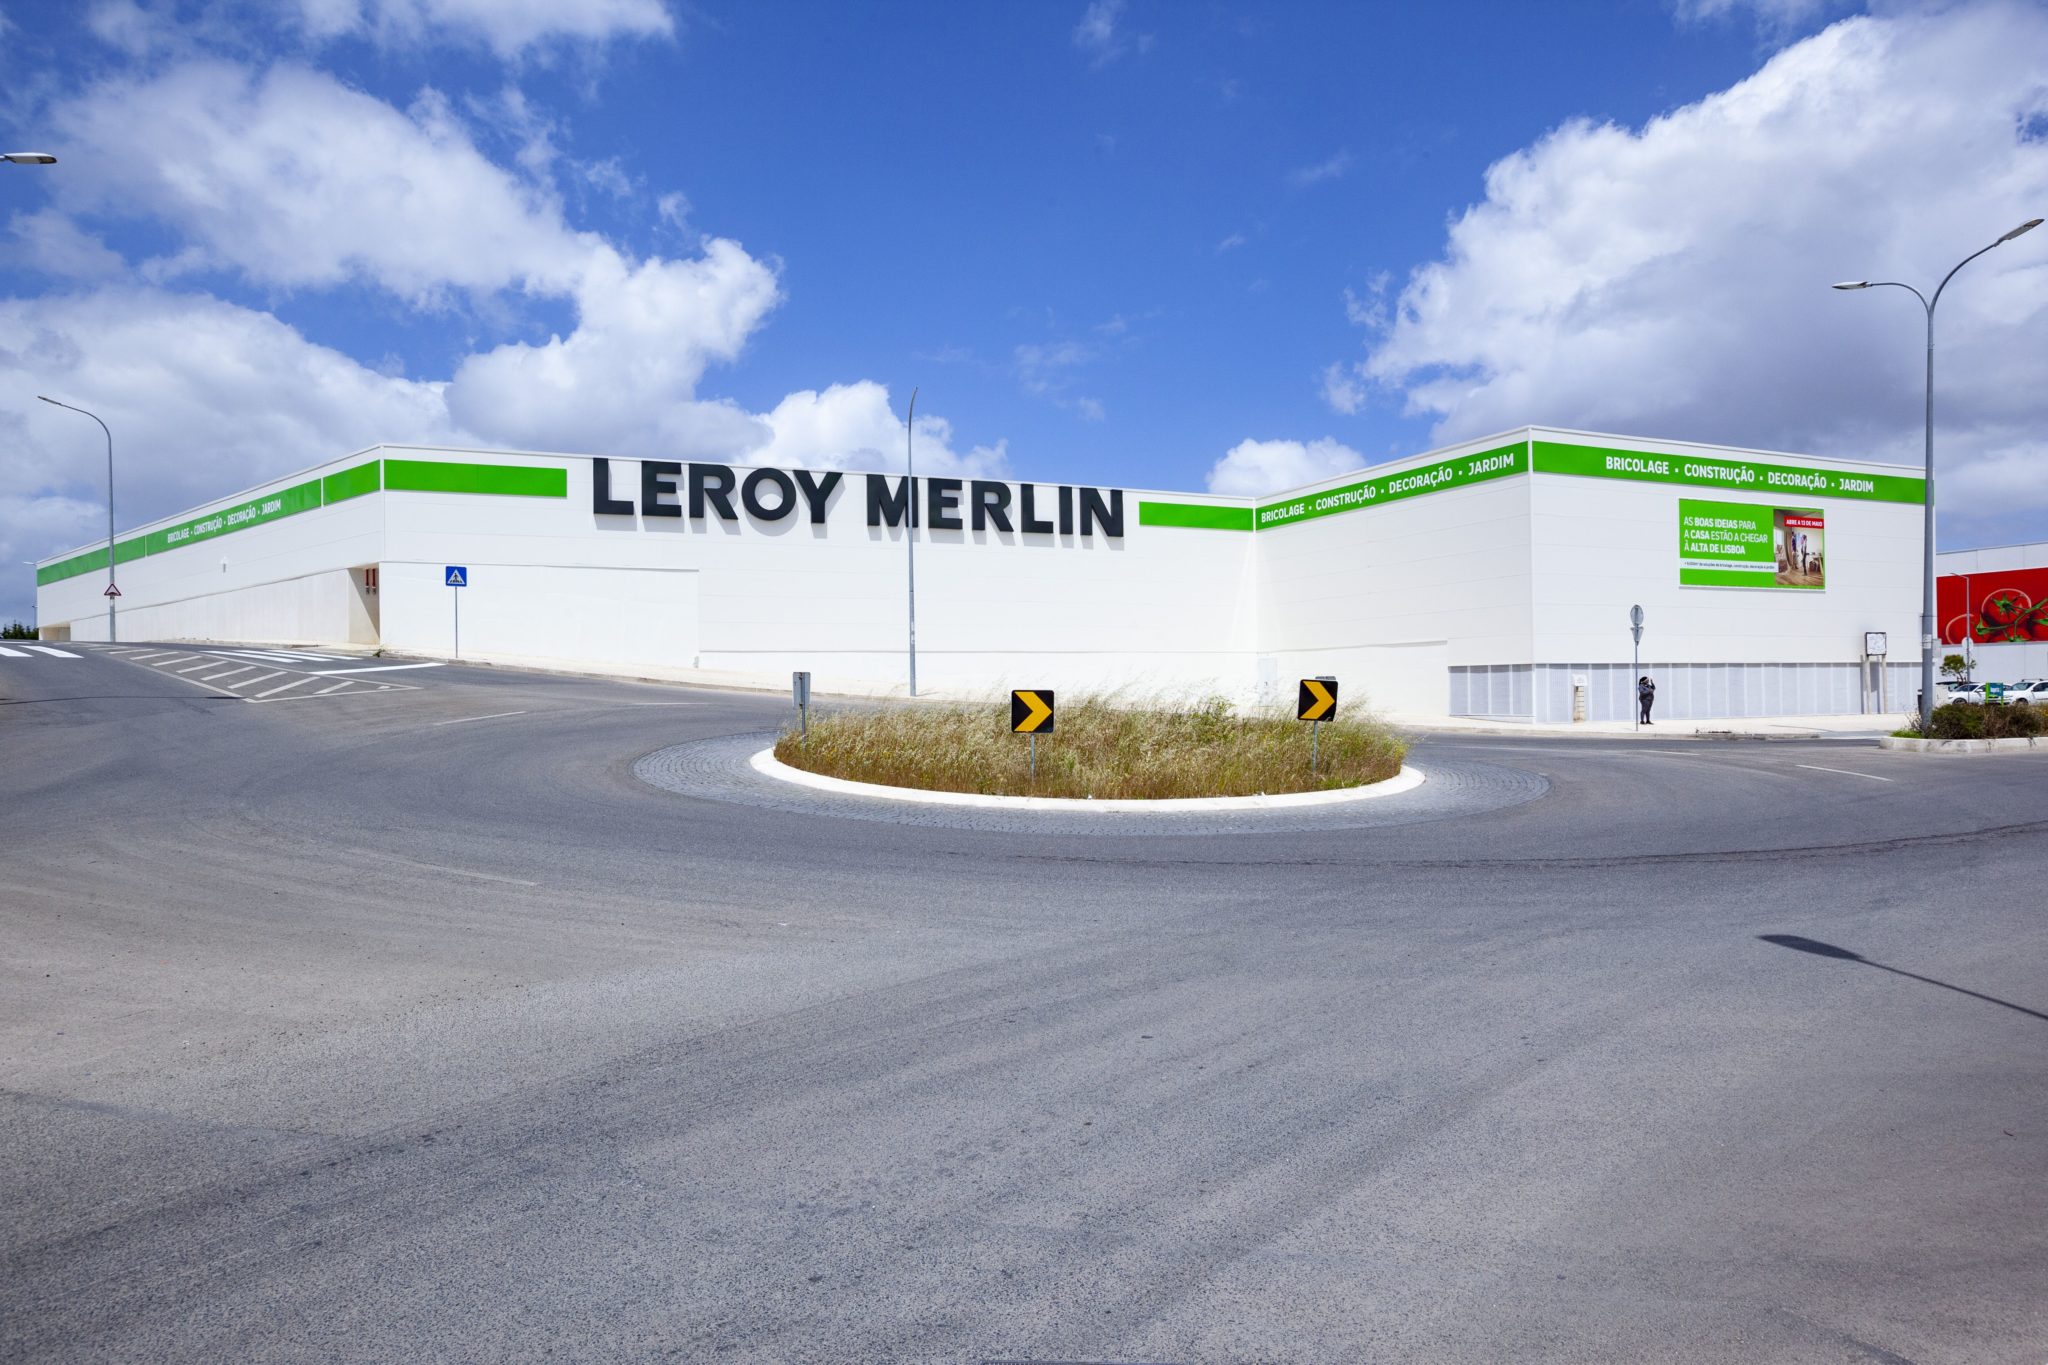 Leroy Merlin abre primeira loja de grande dimensão no concelho de Lisboa -  Hipersuper - Hipersuper